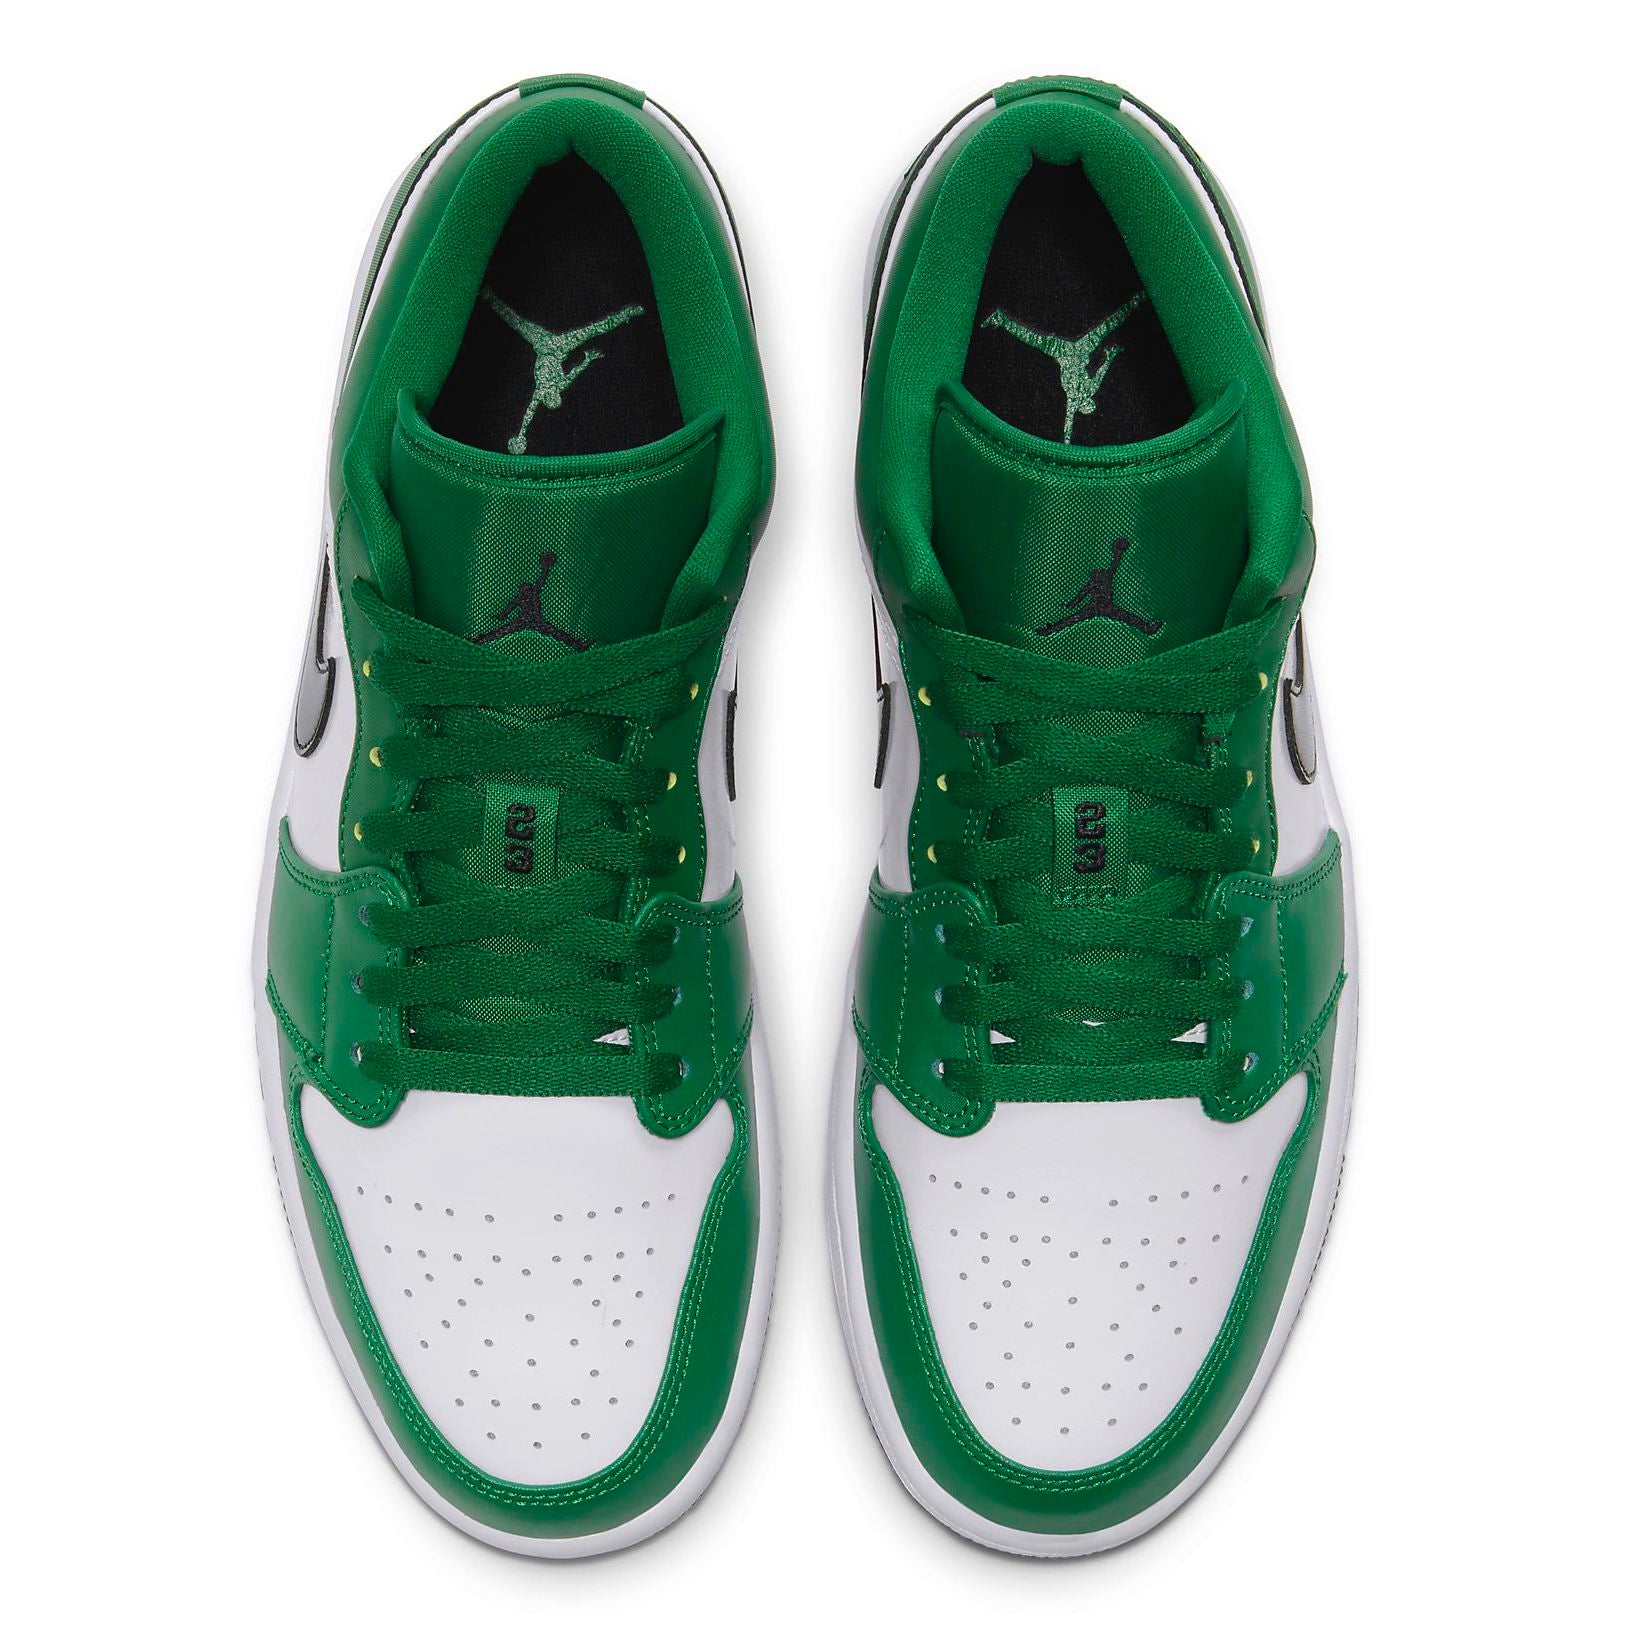 Air Jordan 1 Low Pine Green - 553558-301